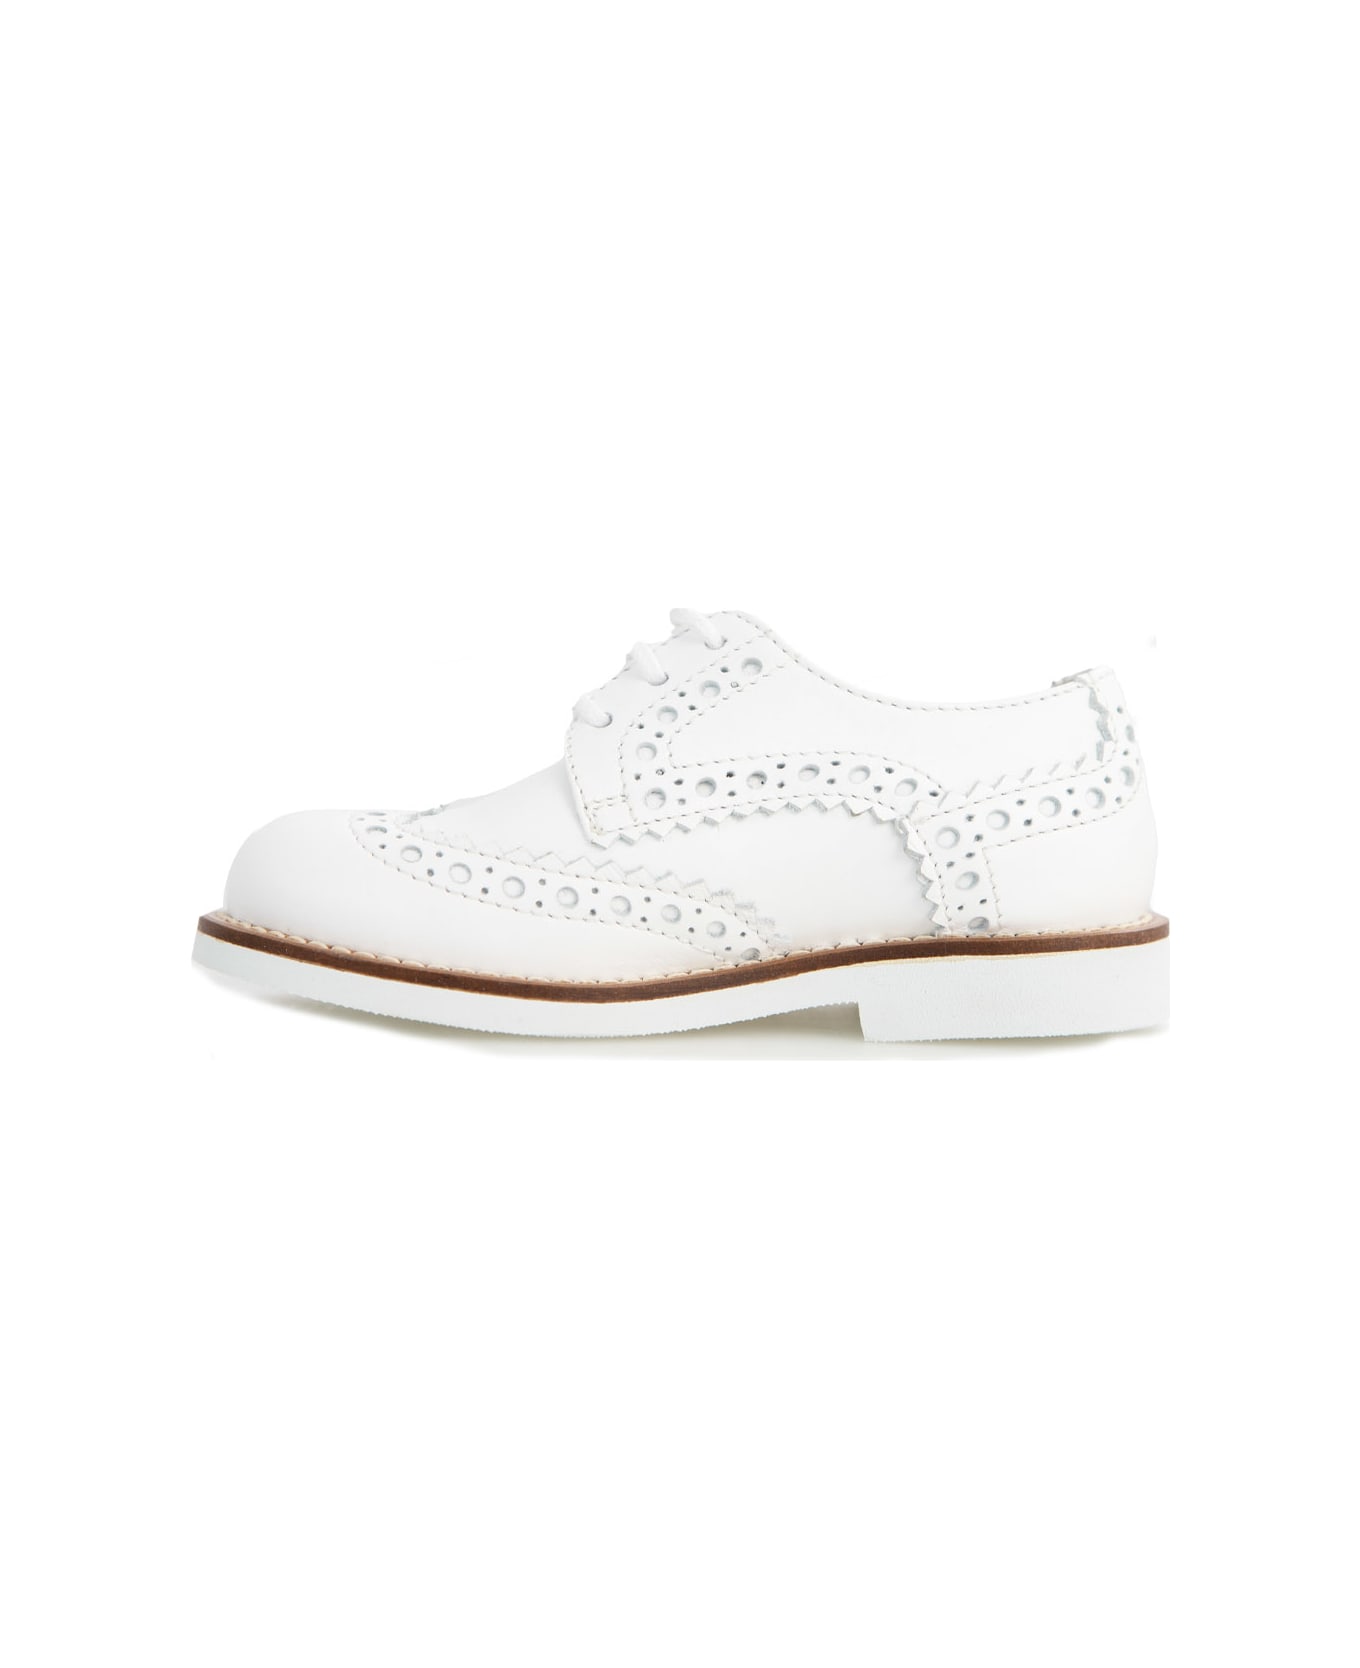 Andrea Montelpare Leather Shoe - White シューズ